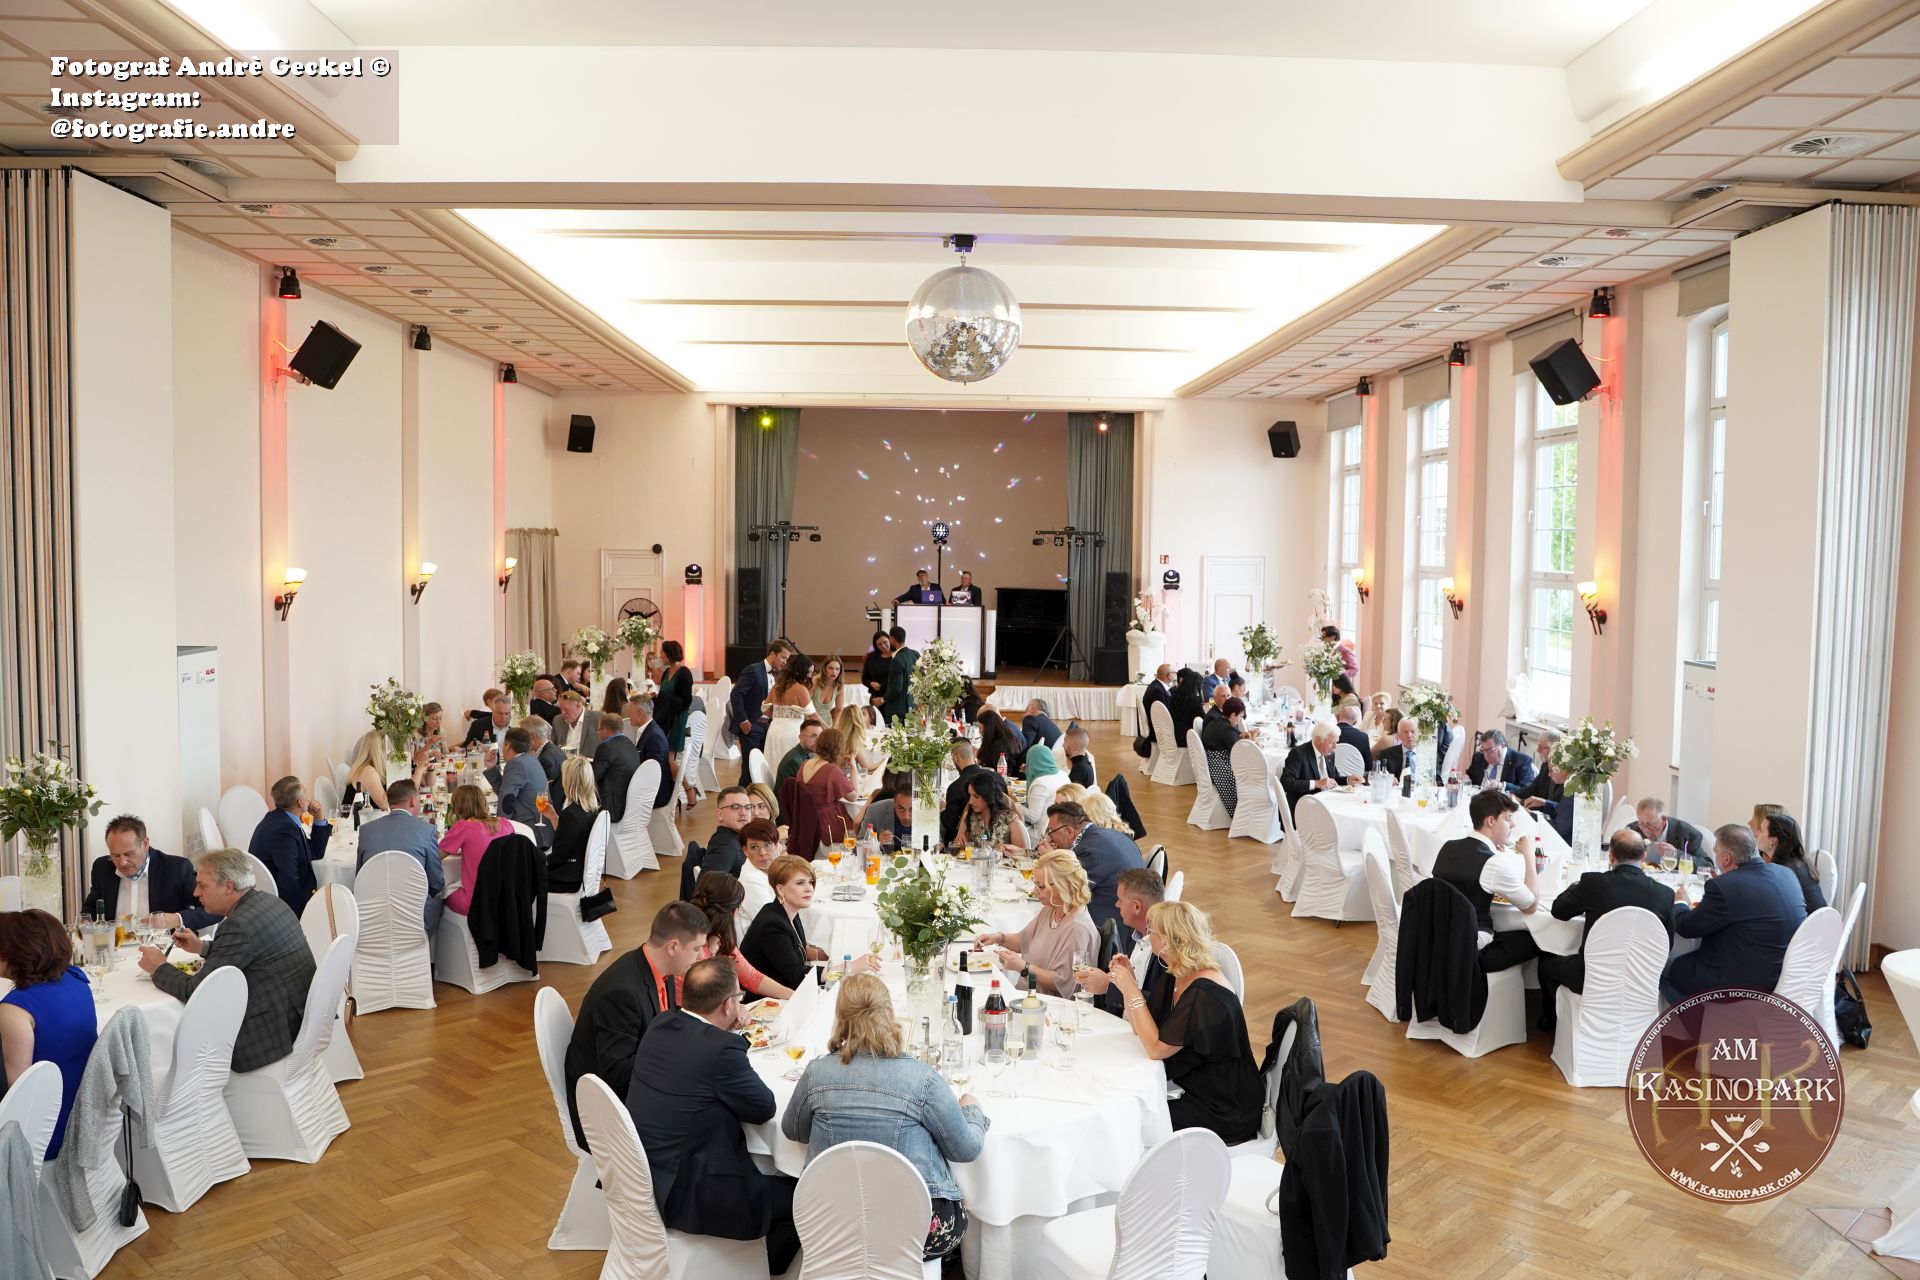 Bild 56 Restaurant, Tanzlokal, Hochzeitssaal & Dekoration am Kasinopark, Kreis Osnabrück in Georgsmarienhütte